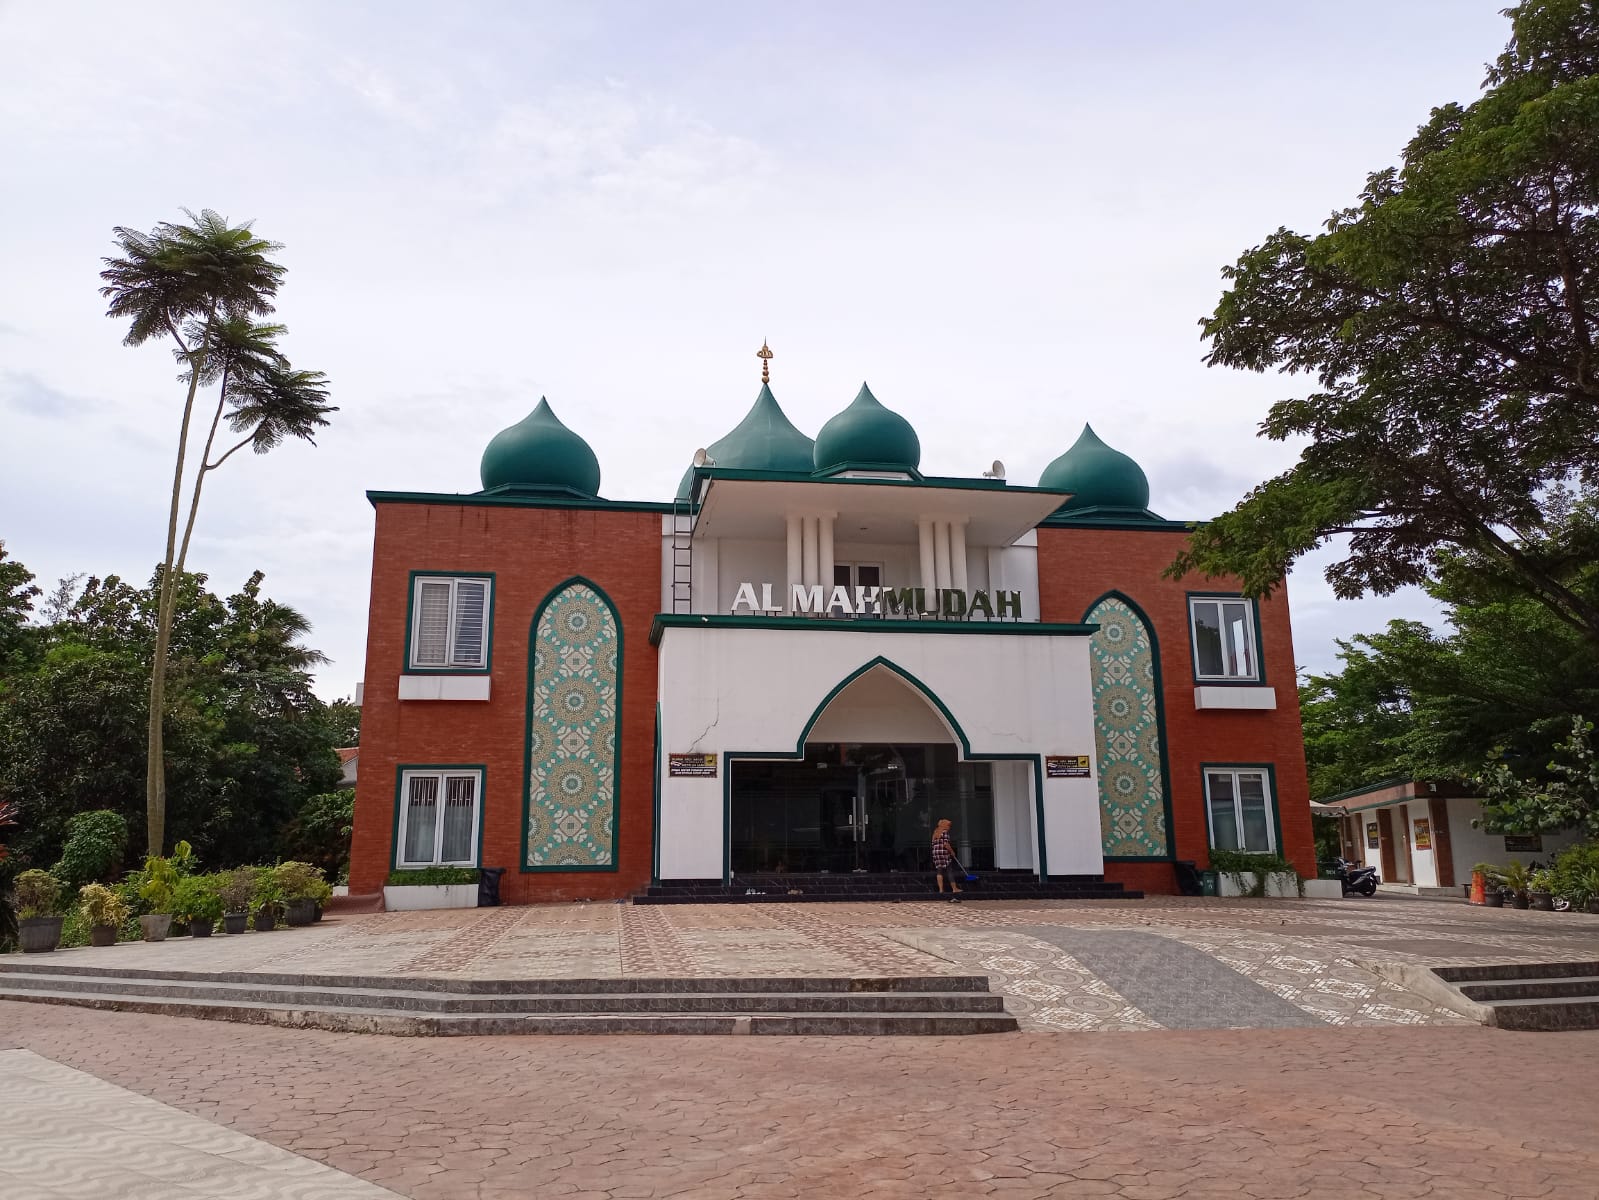 Masjid al mahmudah